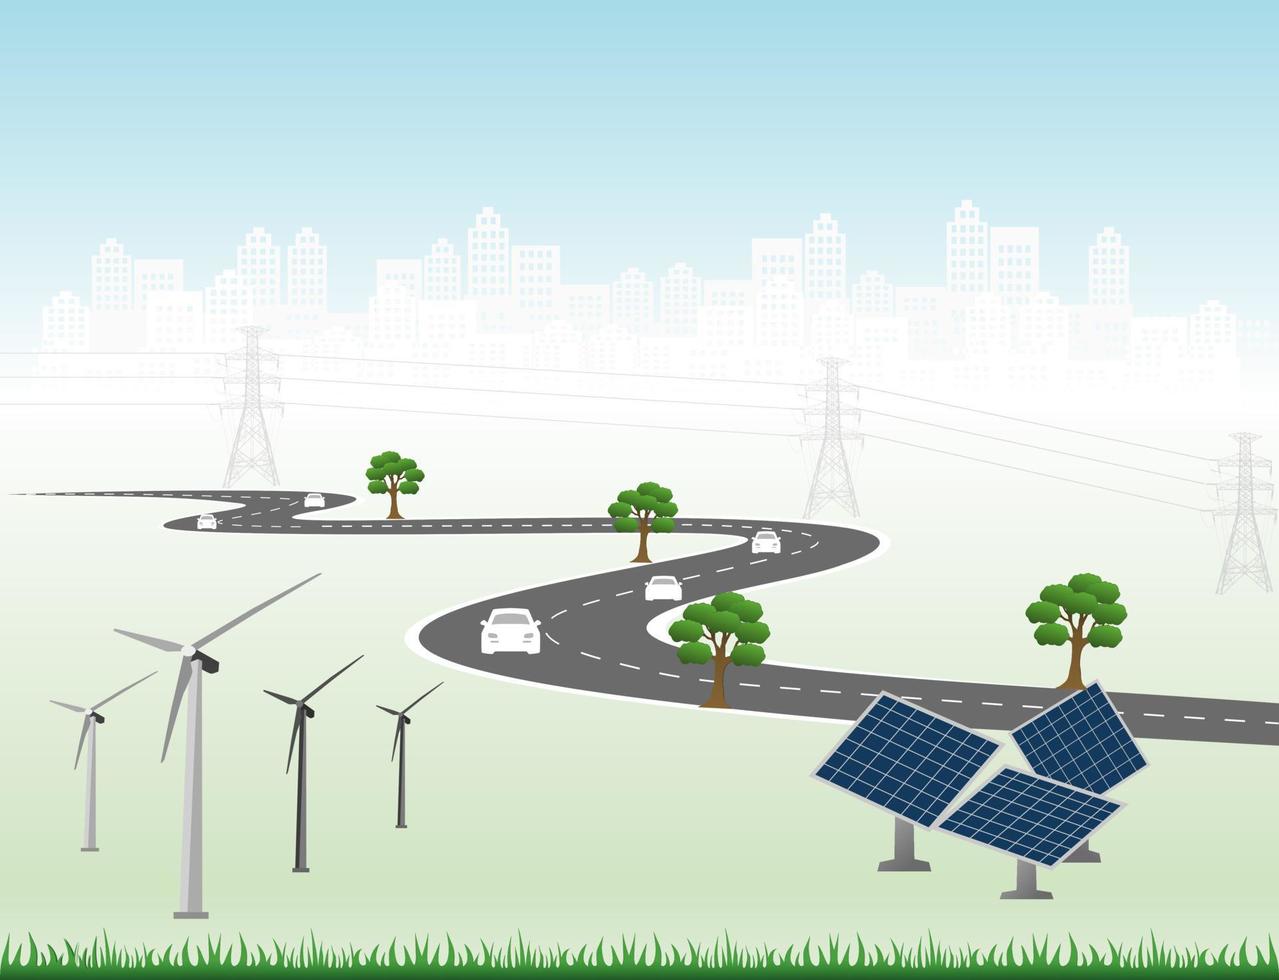 système de production d'électricité énergie propre renouvelable de la nature, telle que l'énergie éolienne, solaire, hydraulique, peut être utilisée pour produire de l'électricité. modèle vectoriel chronologie infographique des opérations commerciales avec des drapeaux